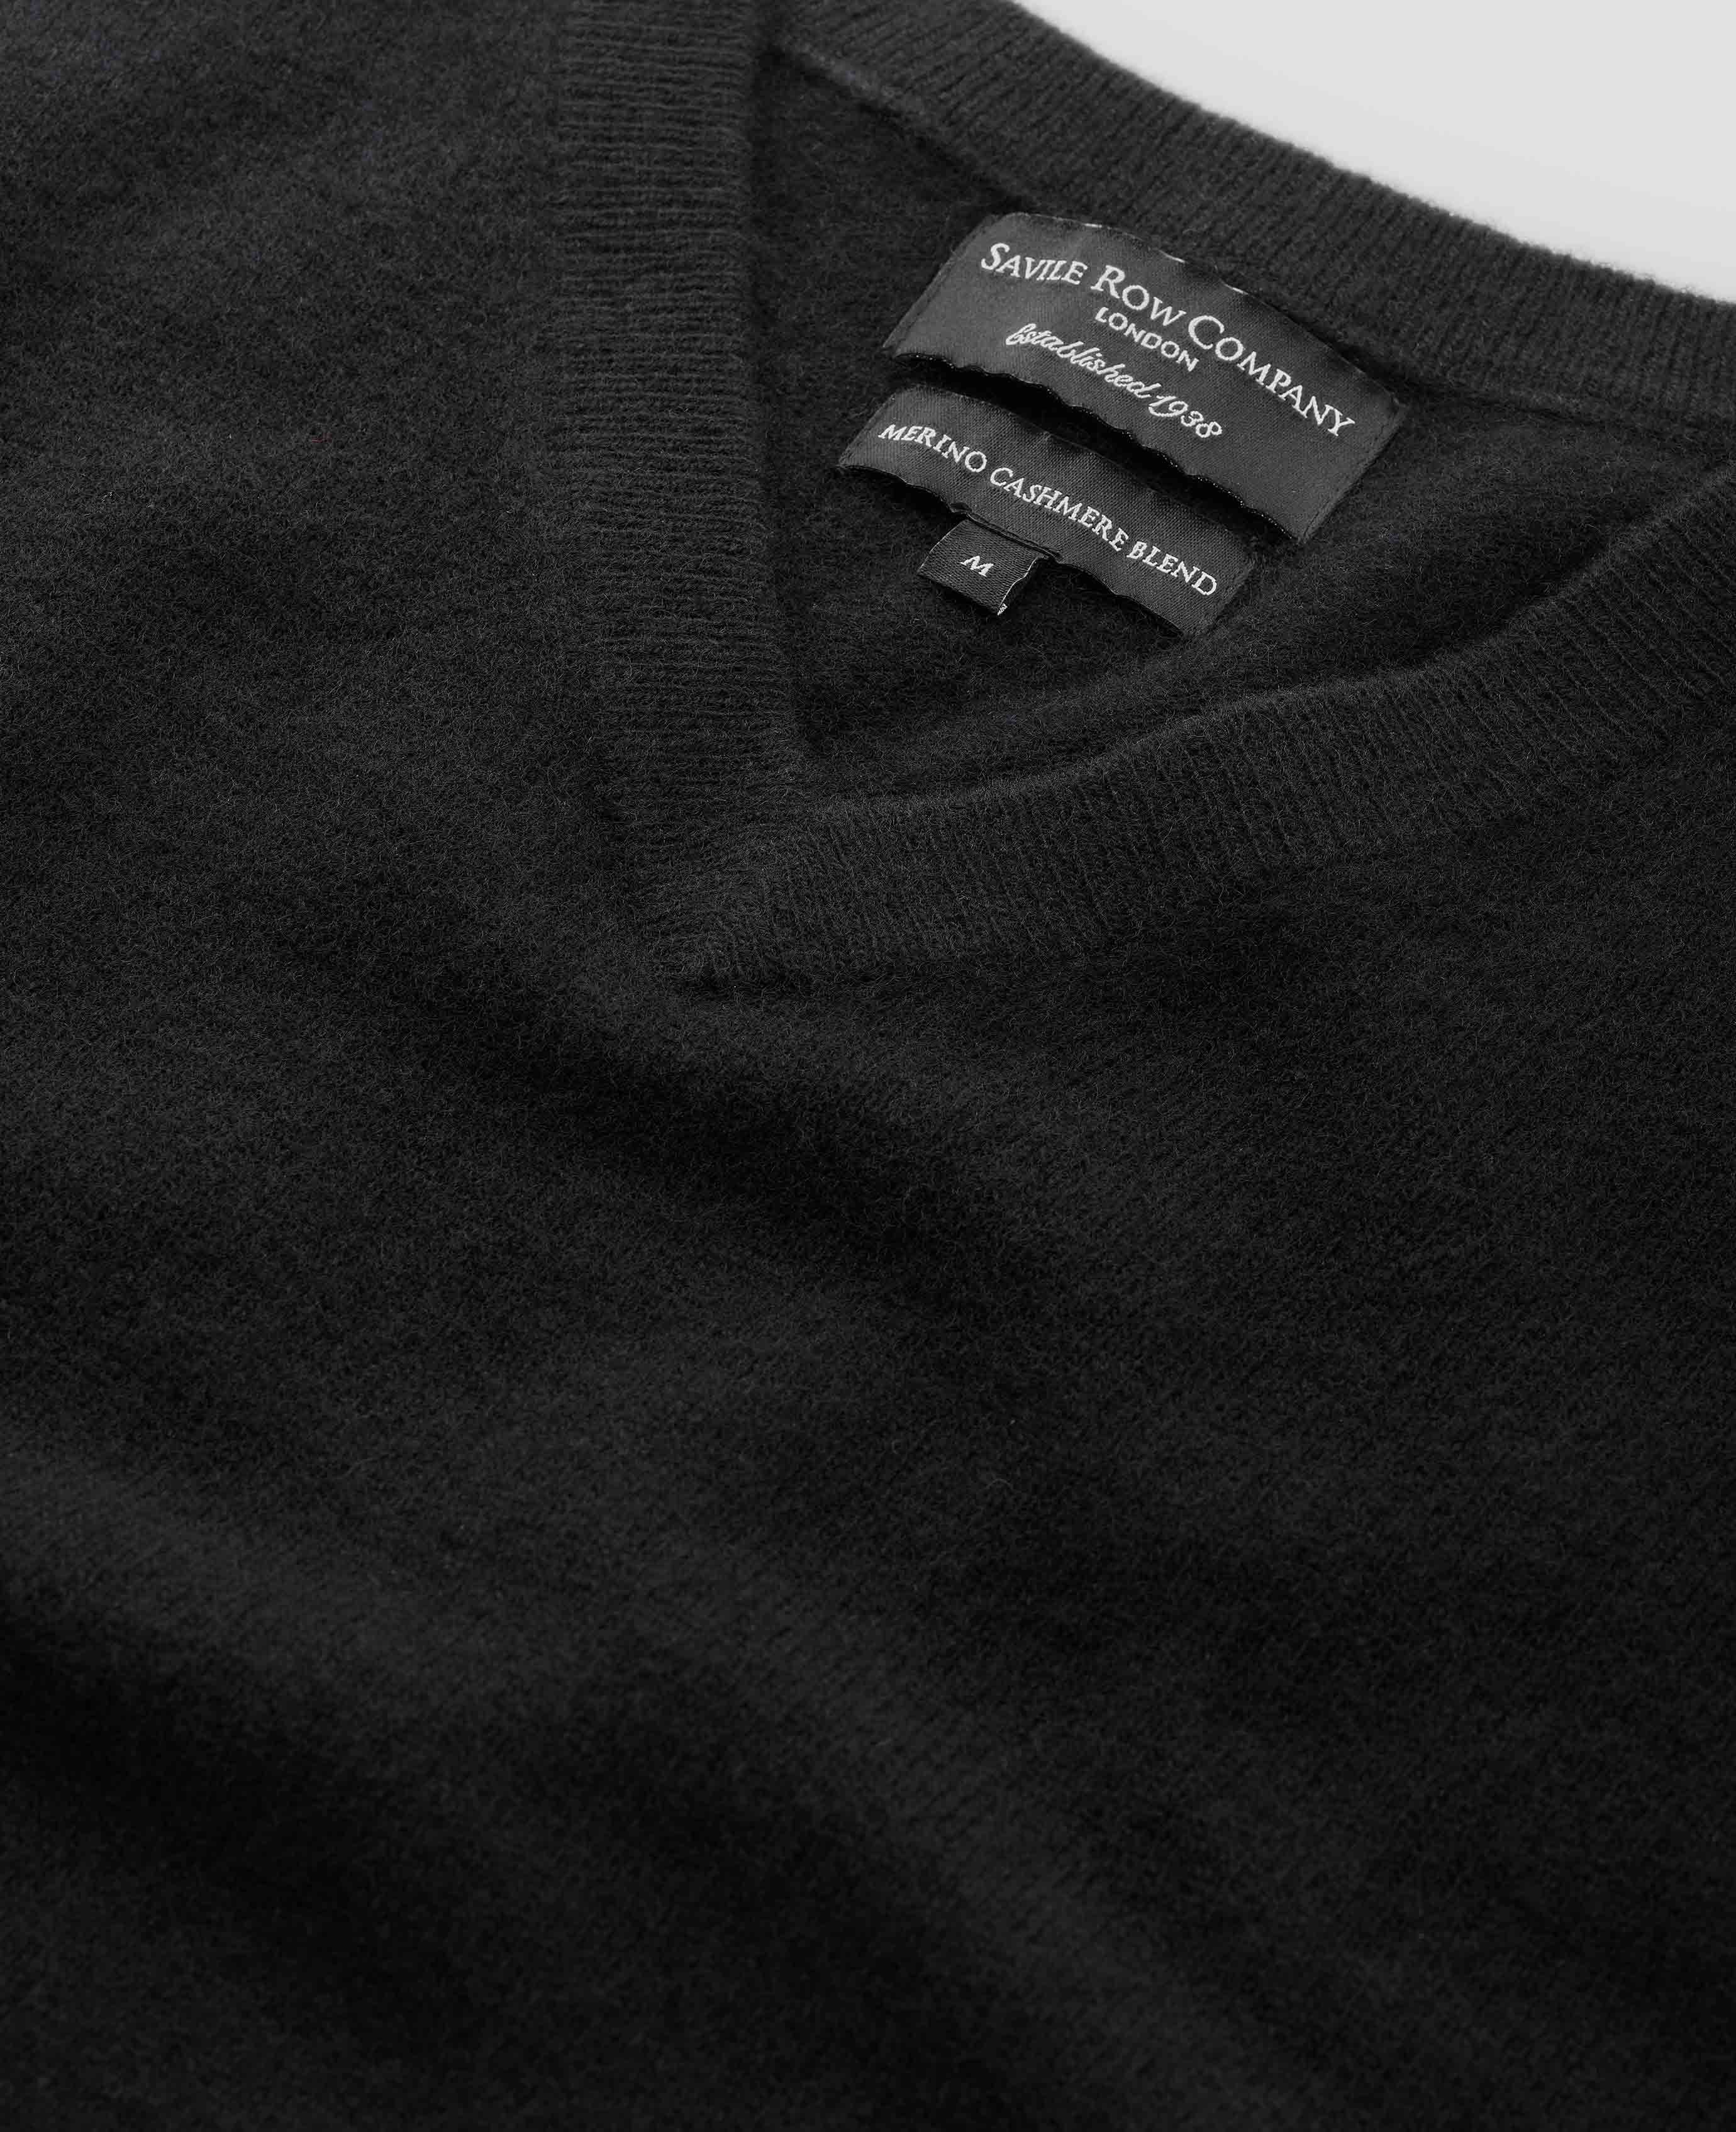 Men's Black Wool Cashmere V-Neck Jumper | Savile Row Co